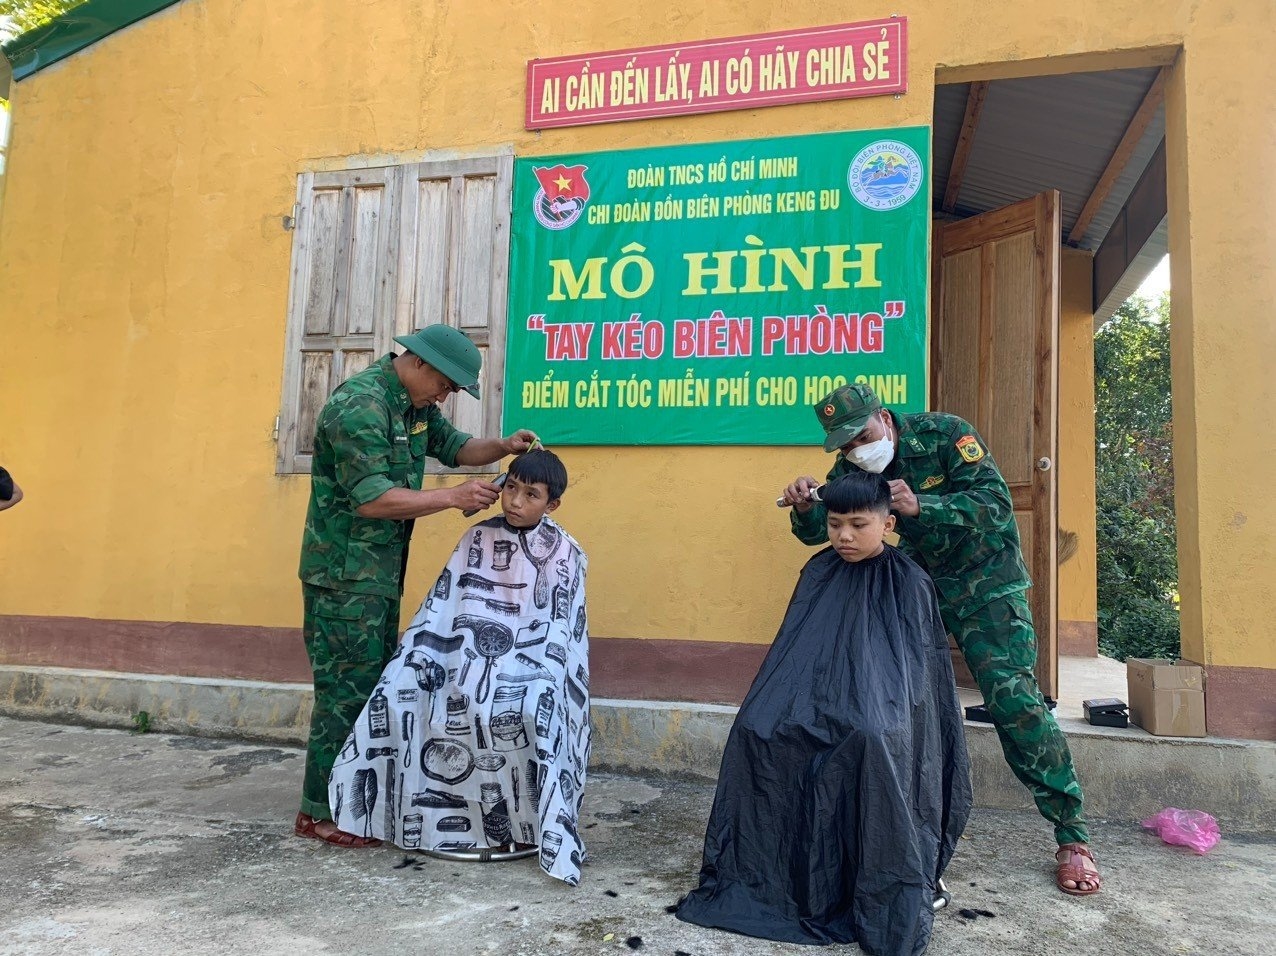 Cắt tóc cho các em học sinh tại ngôi nhà thiện nguyện Đồn Biên phòng Keng Đu, BĐBP Nghệ An